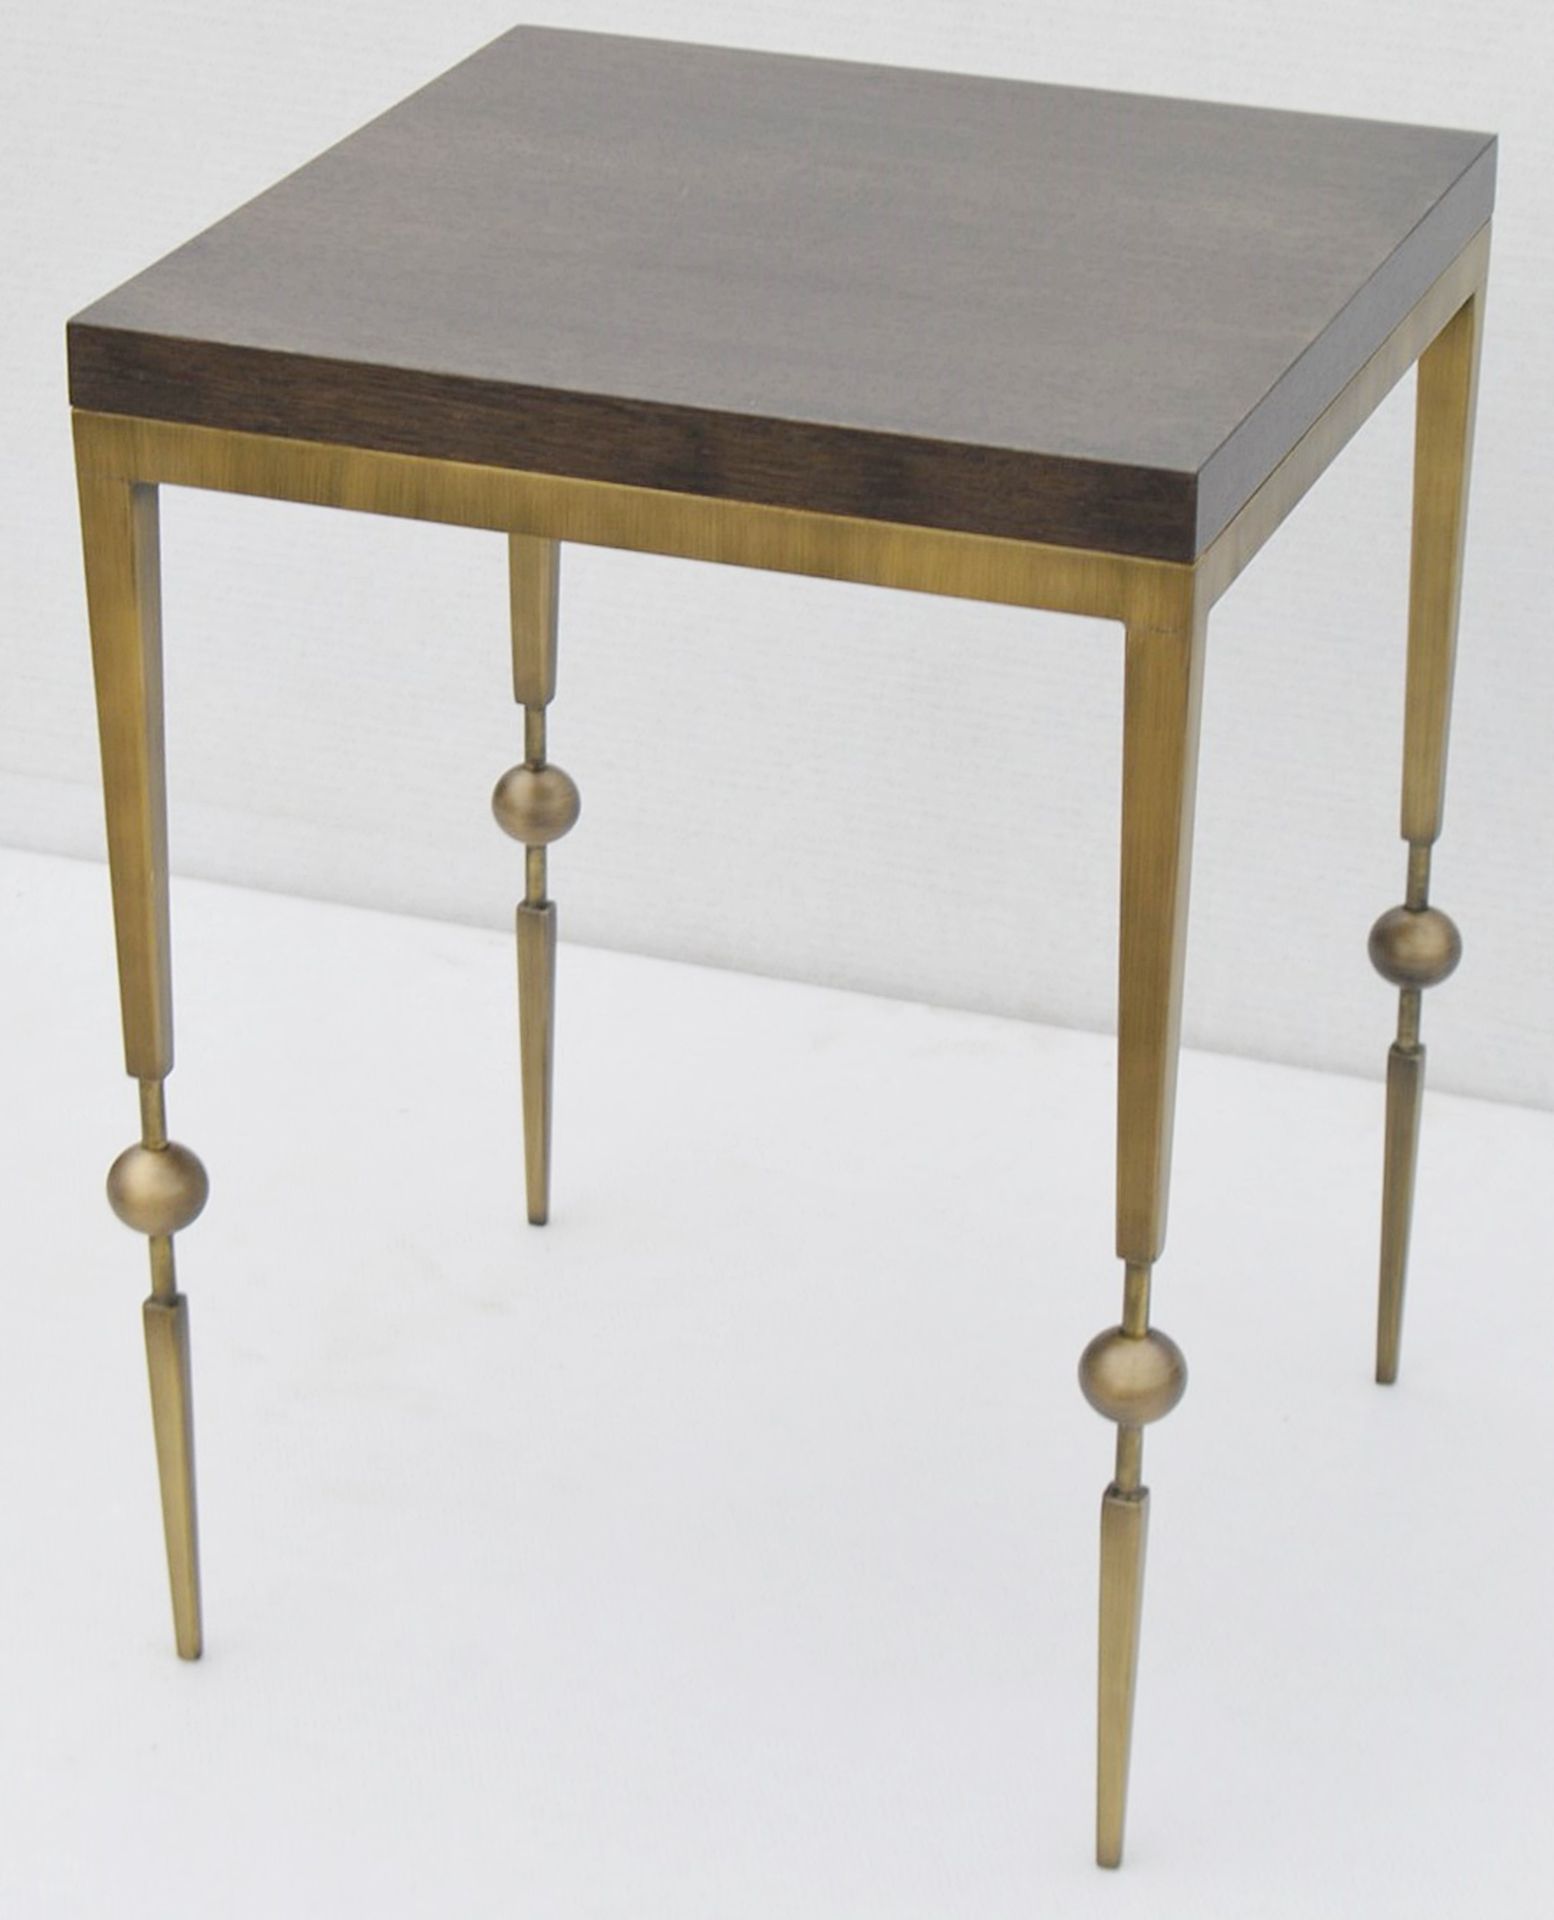 1 x JUSTIN VAN BREDA 'Sphere' Designer Occasional Table - Original RRP £1,200